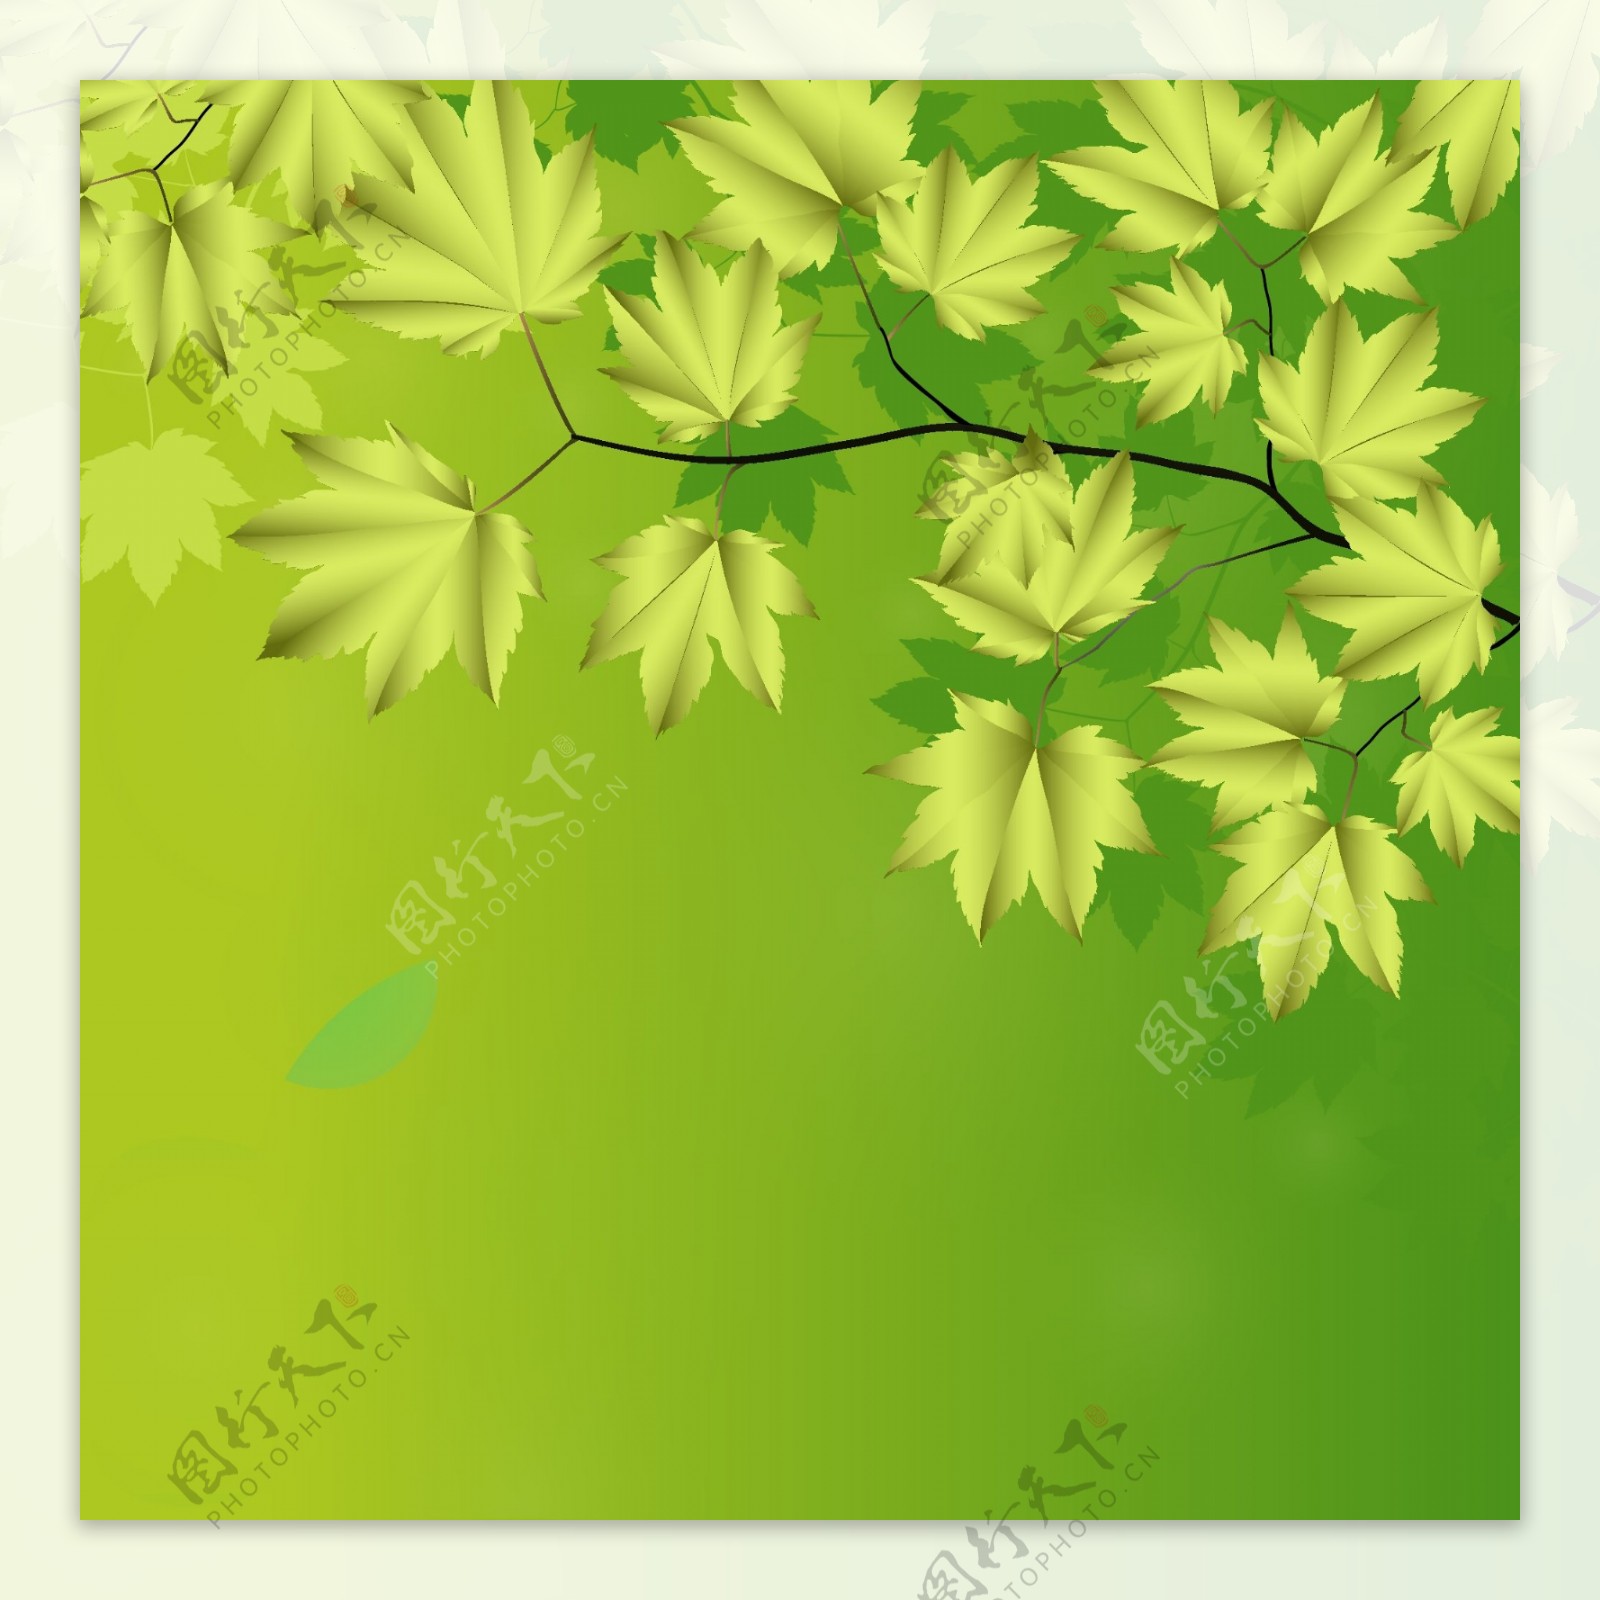 树枝和树叶的绿色背景矢量02